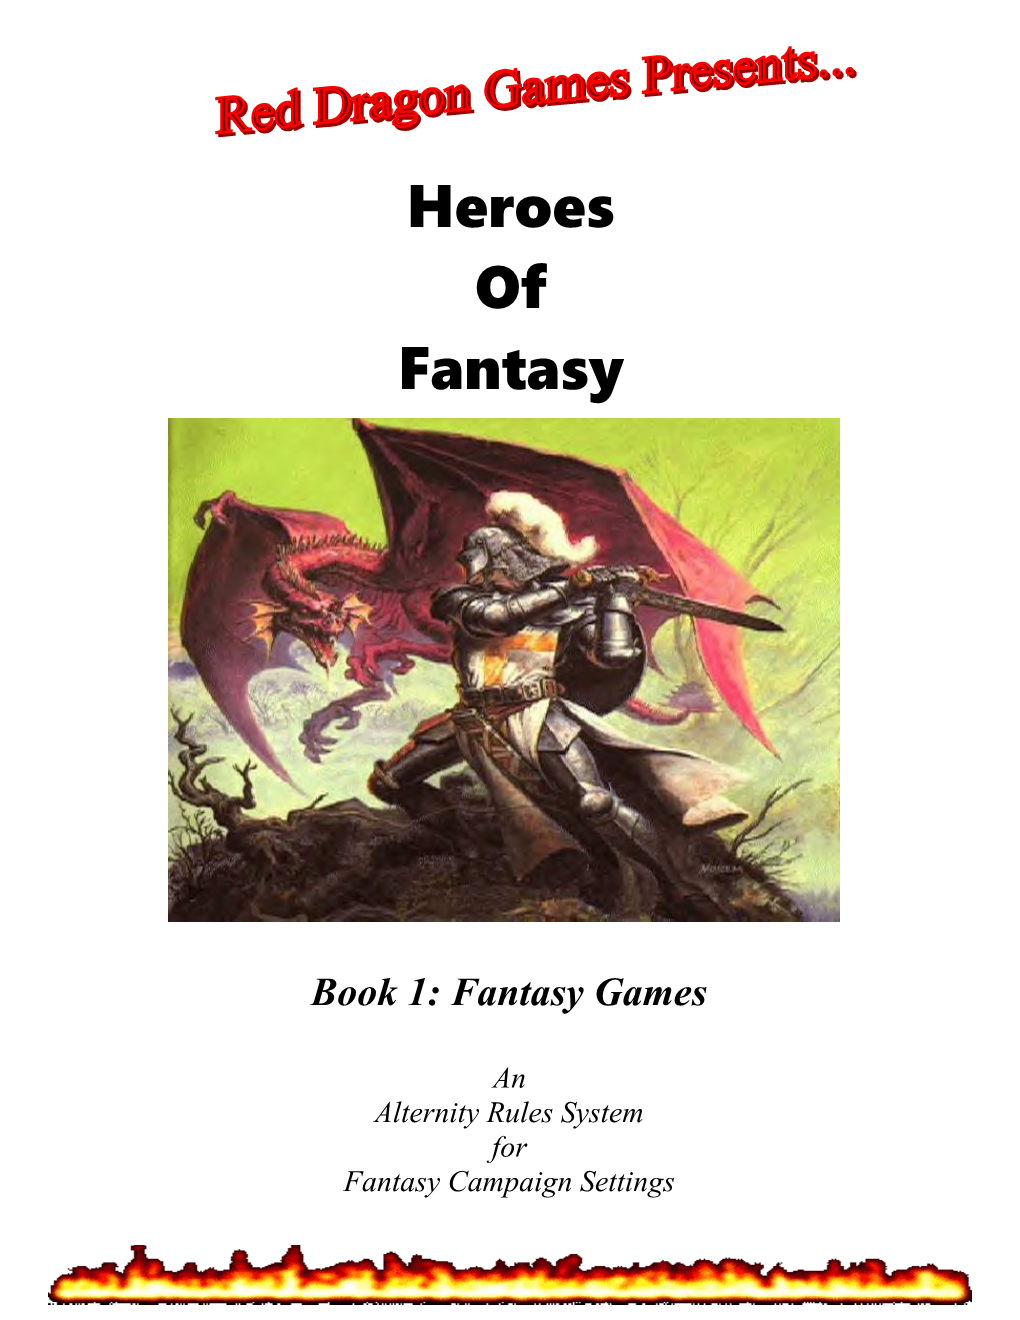 Book 1: Fantasy Games